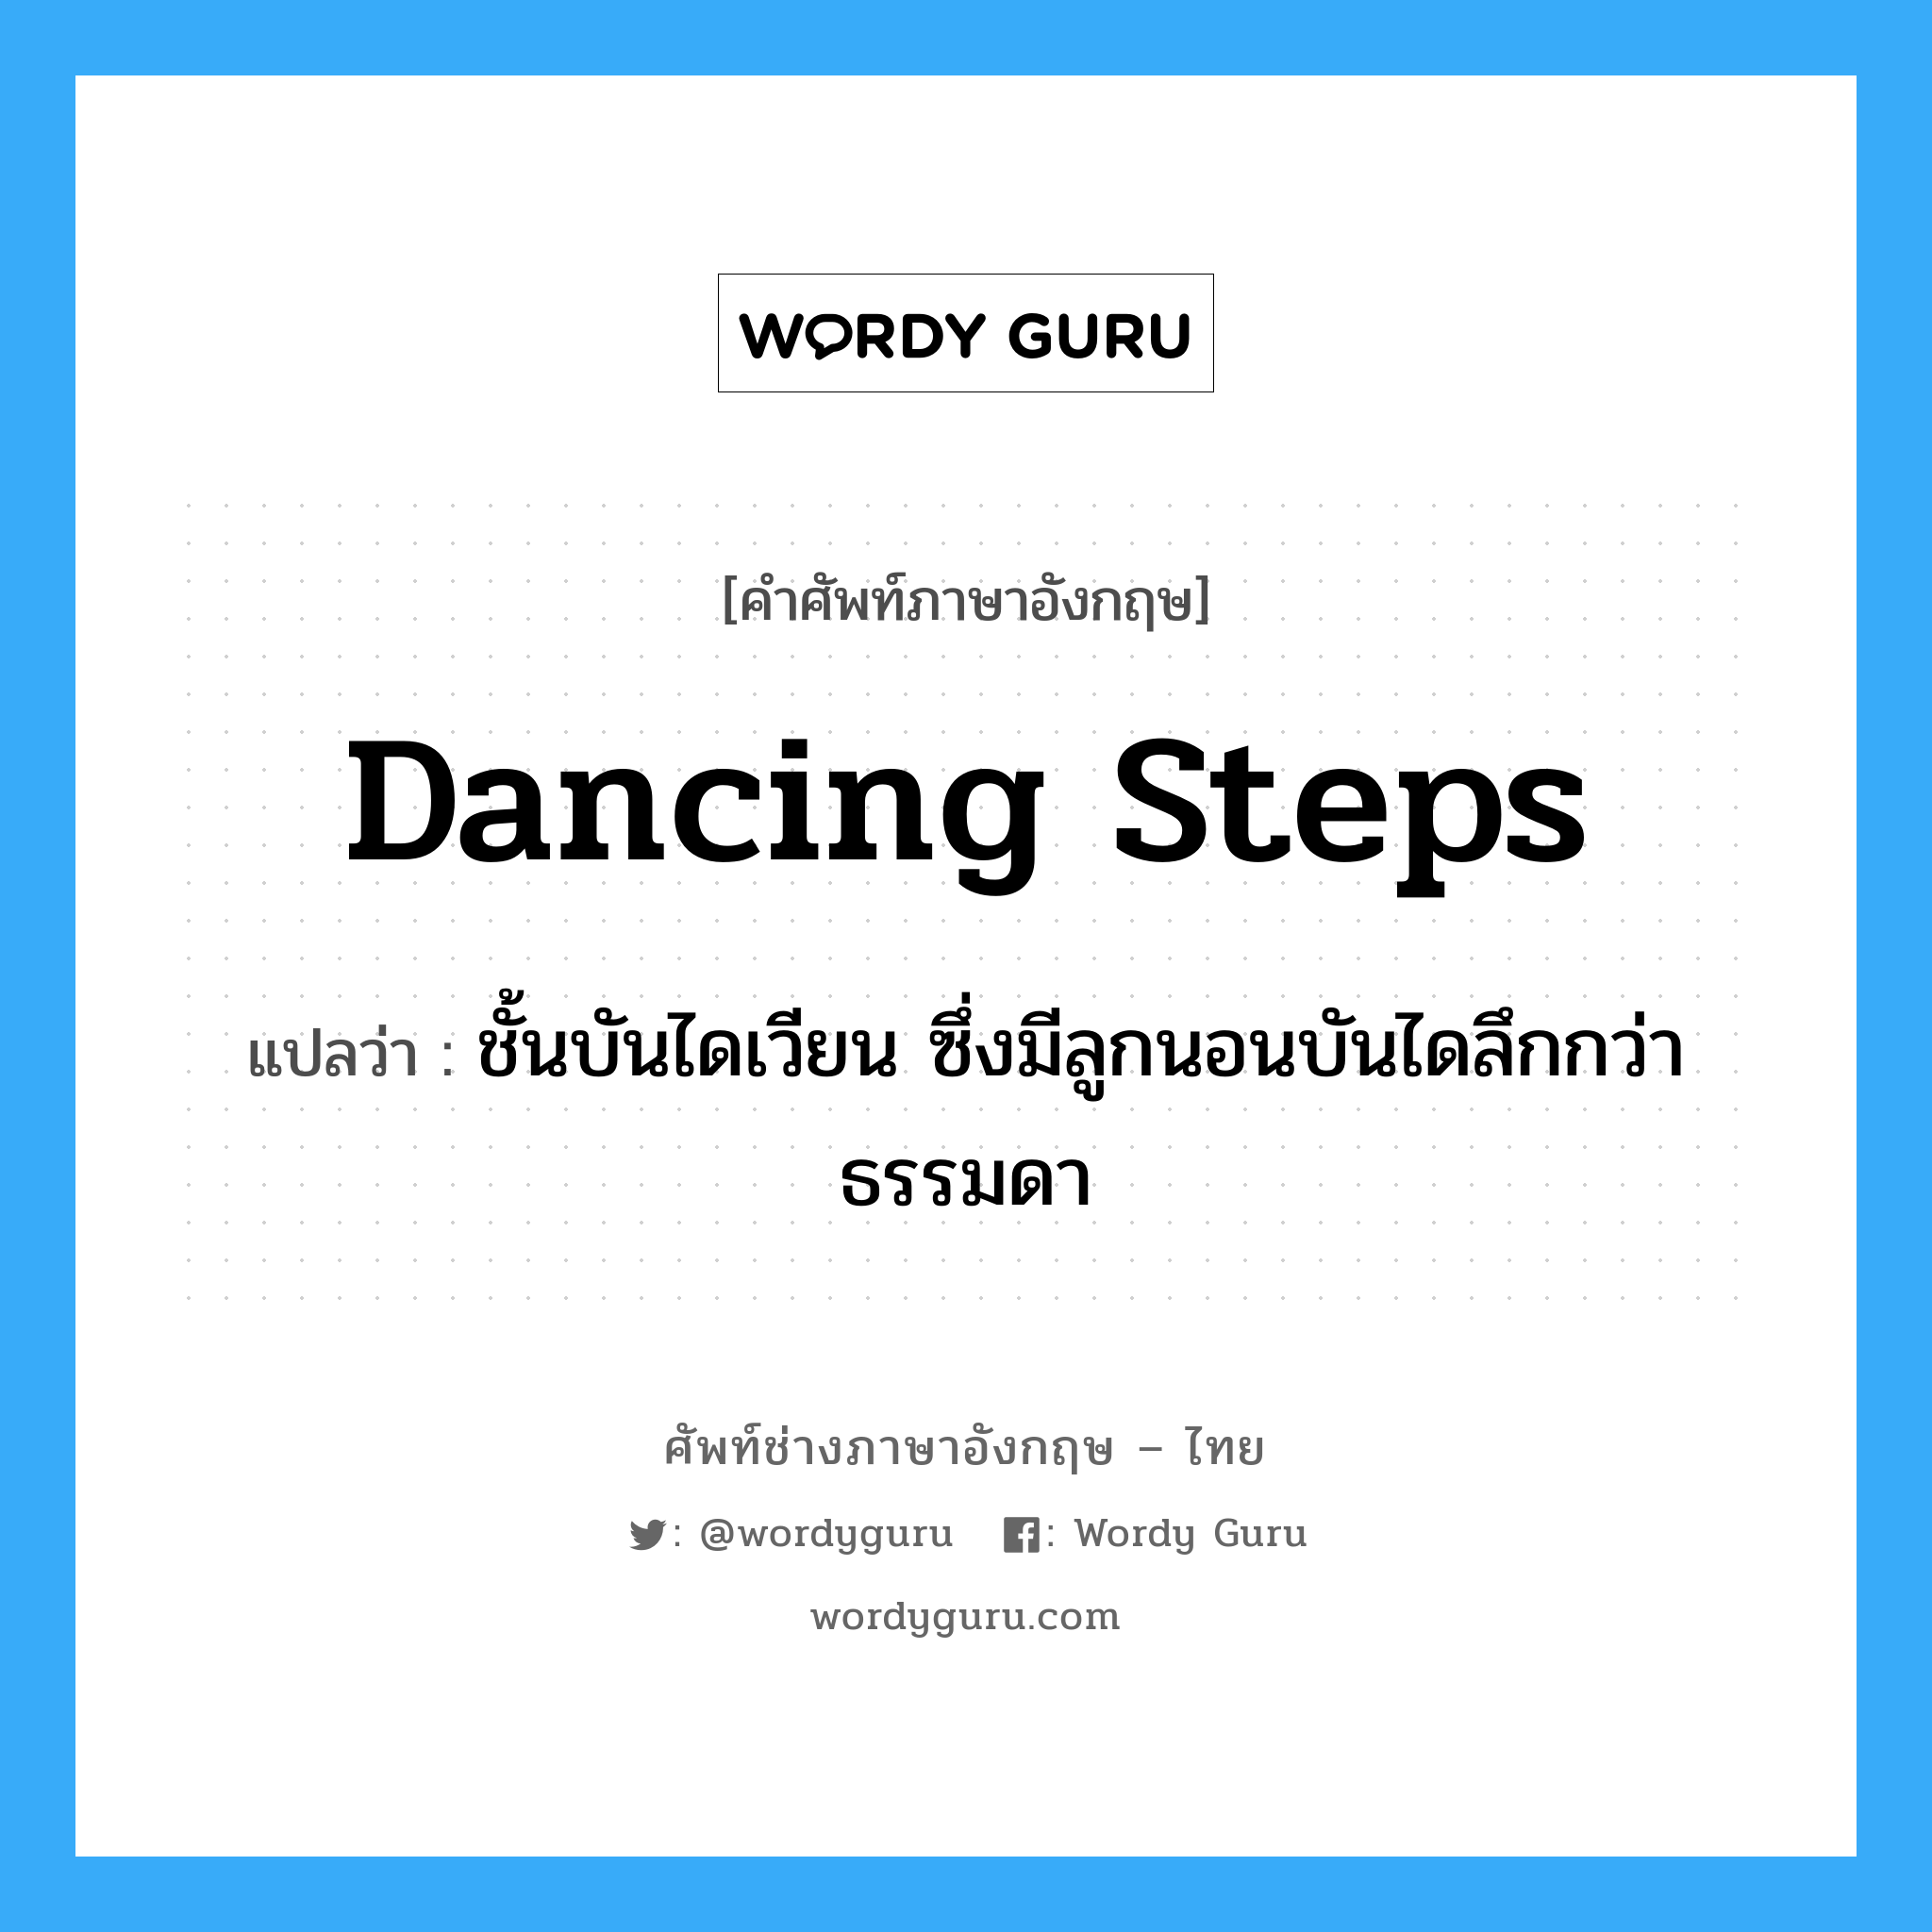 dancing steps แปลว่า?, คำศัพท์ช่างภาษาอังกฤษ - ไทย dancing steps คำศัพท์ภาษาอังกฤษ dancing steps แปลว่า ชั้นบันไดเวียน ซึ่งมีลูกนอนบันไดลึกกว่าธรรมดา